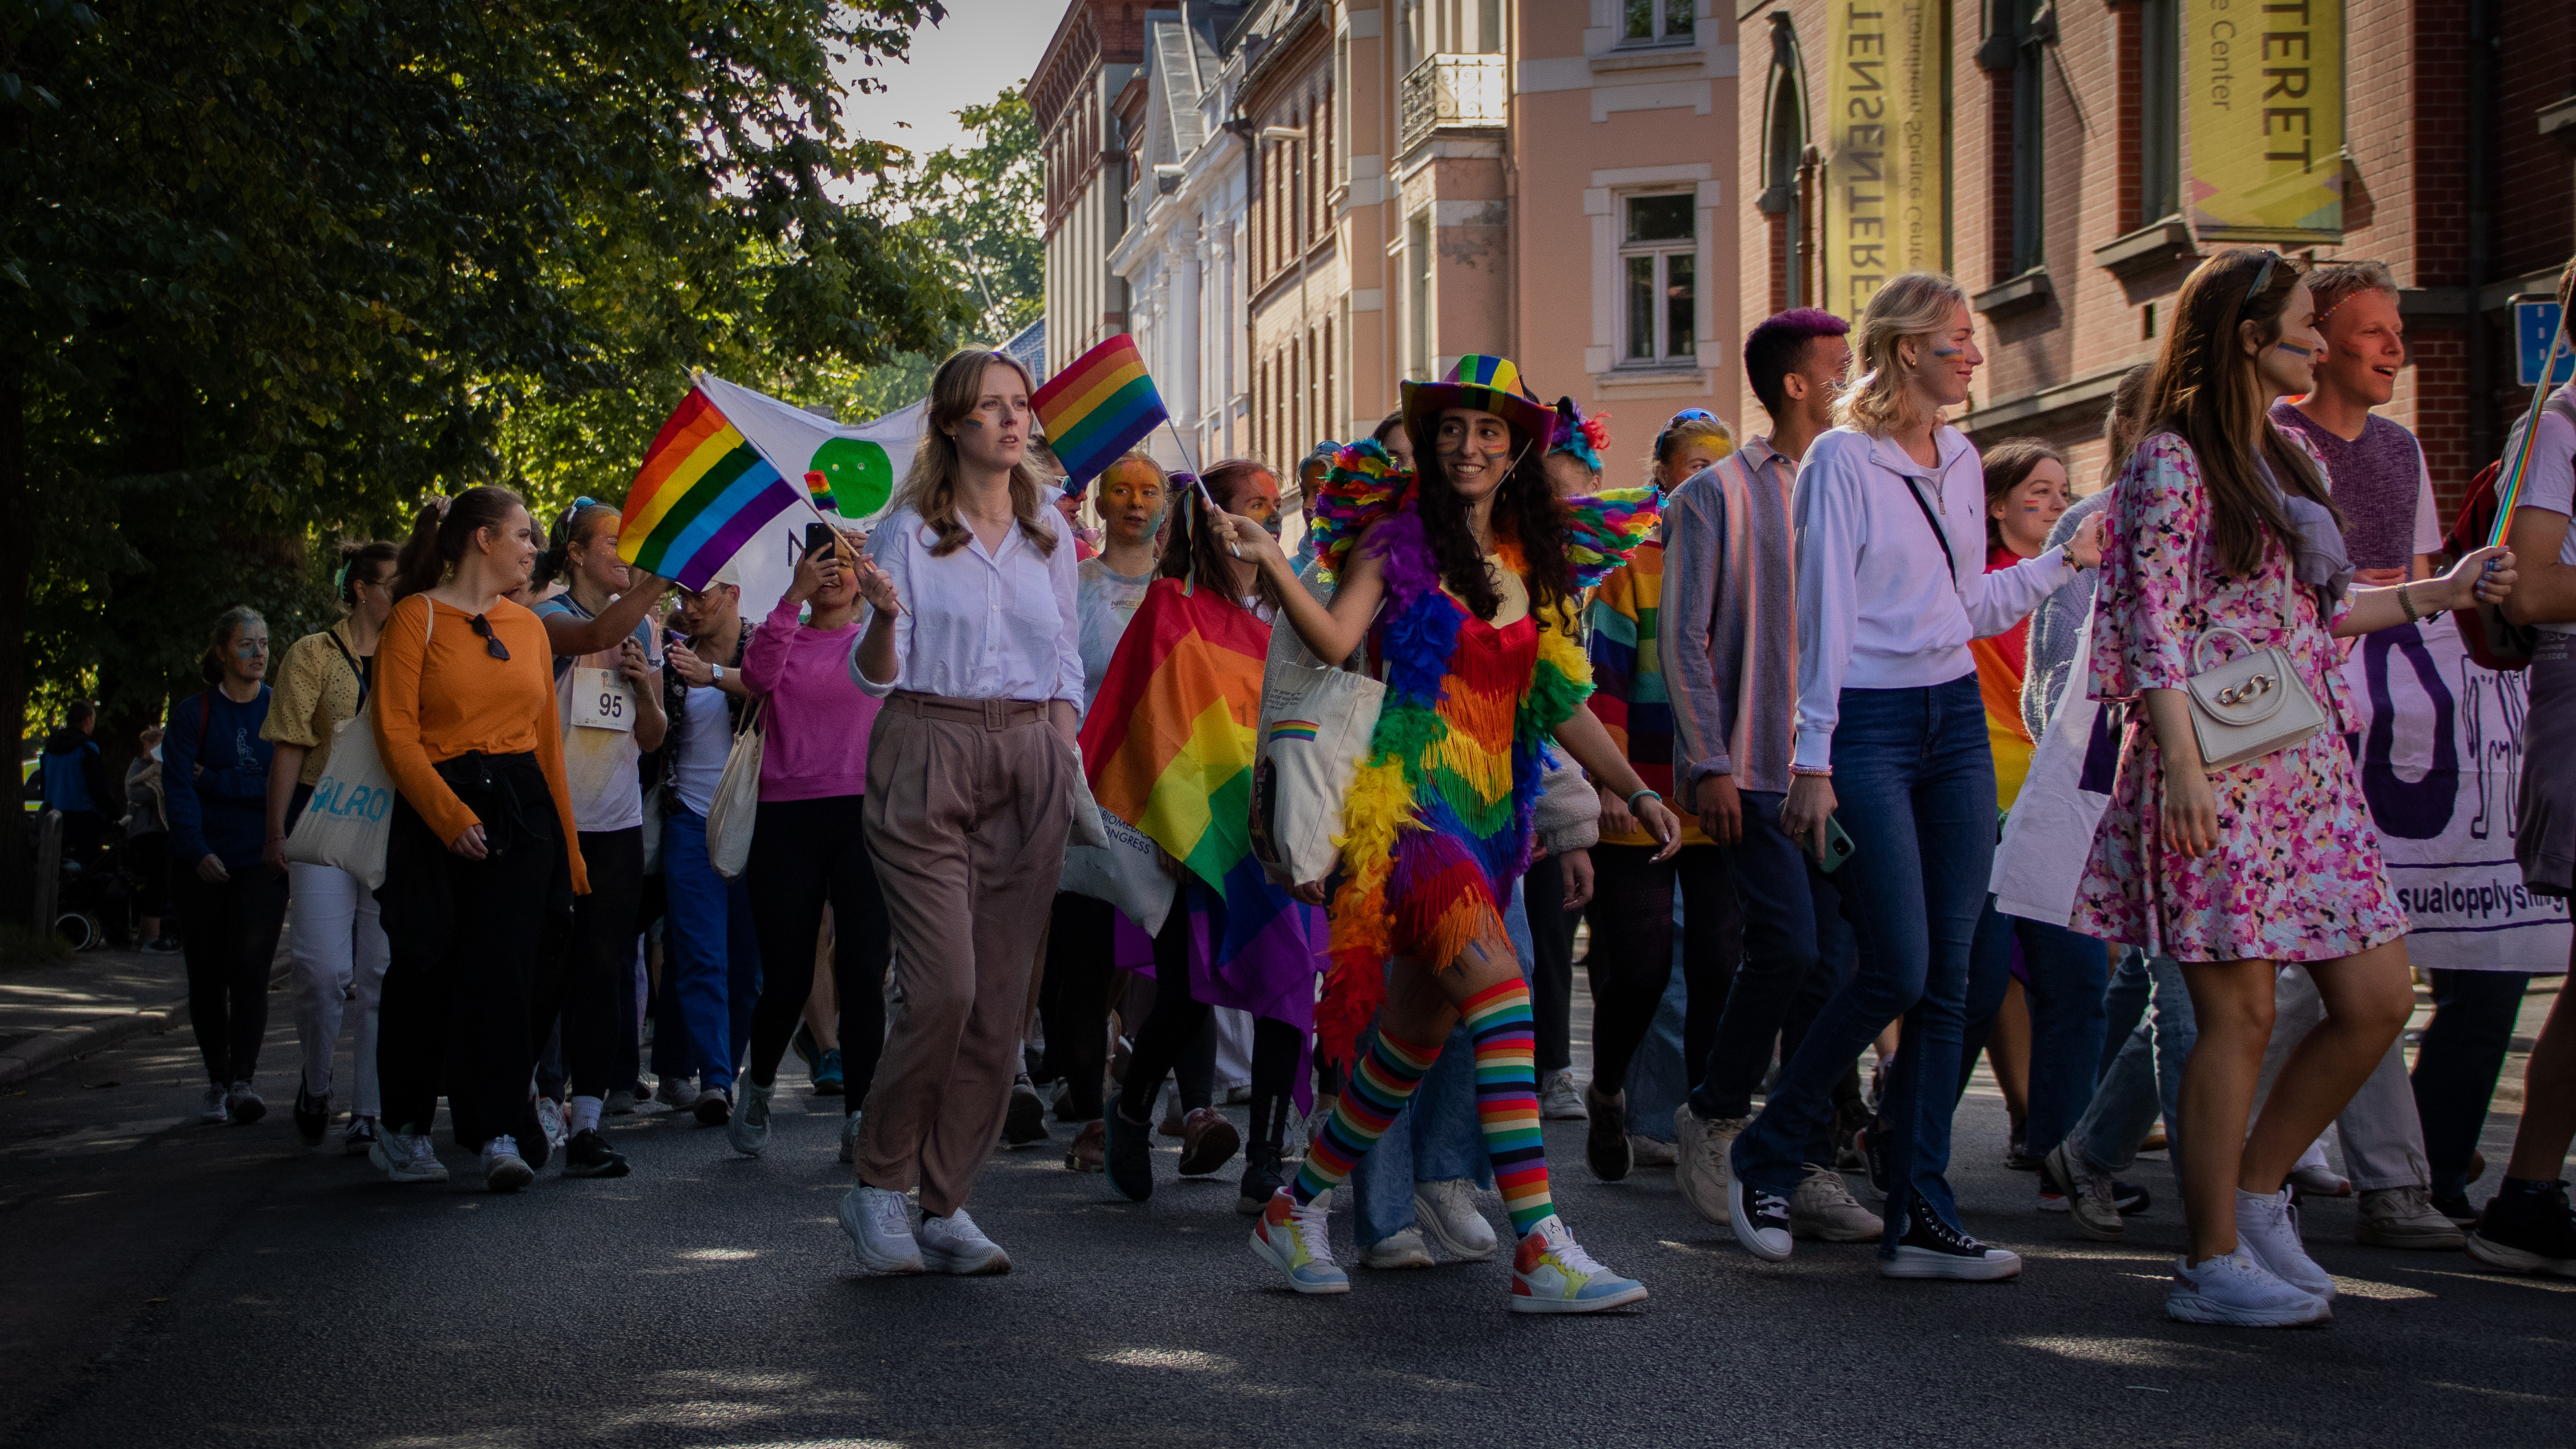 En kvinne som deltar i paraden har kledd seg i regnbuens farger, fra topp til tå.